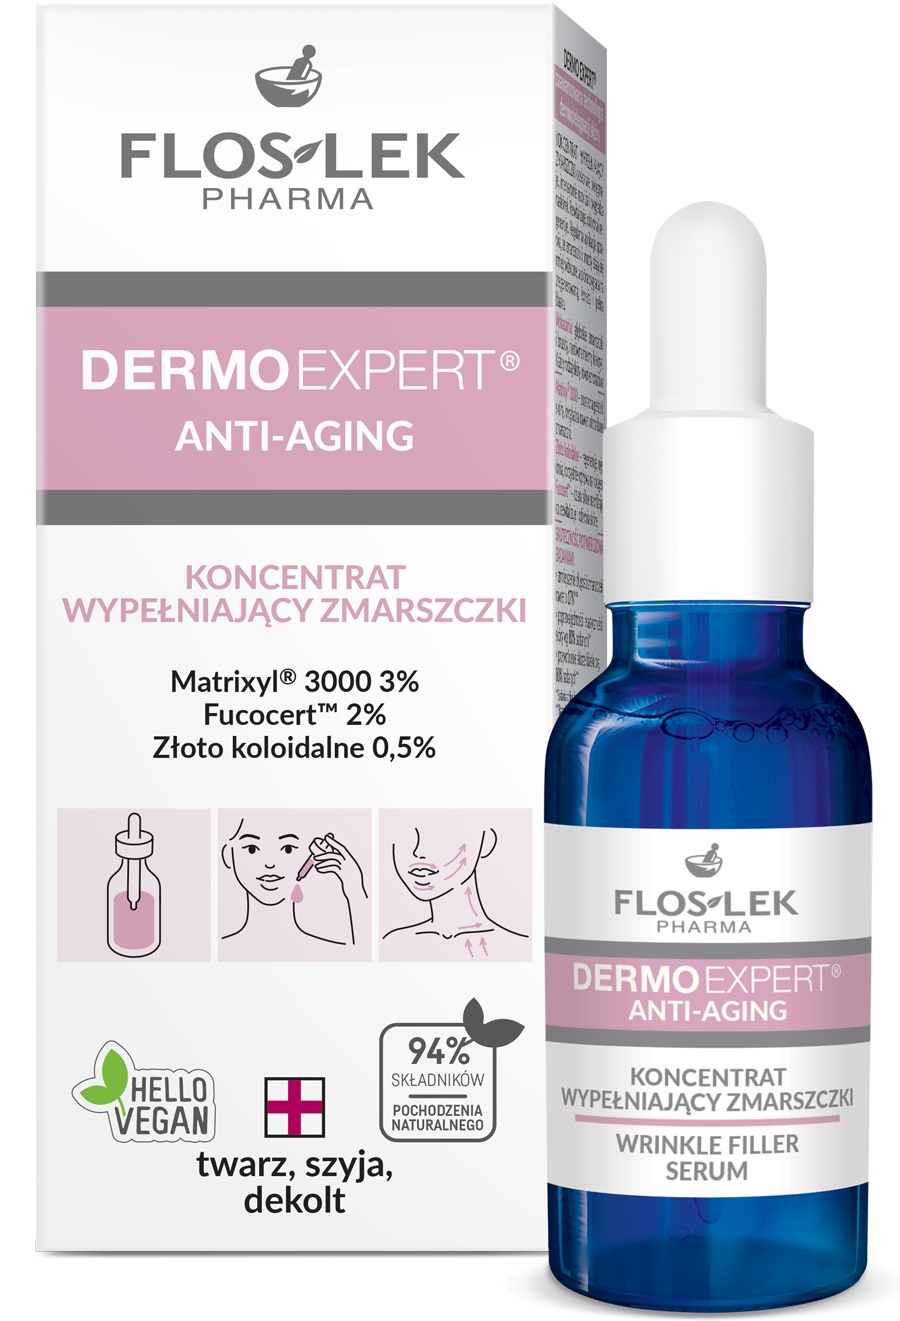 Floslek Dermo Expert Anti-Aging Wrinkle Filler Serum